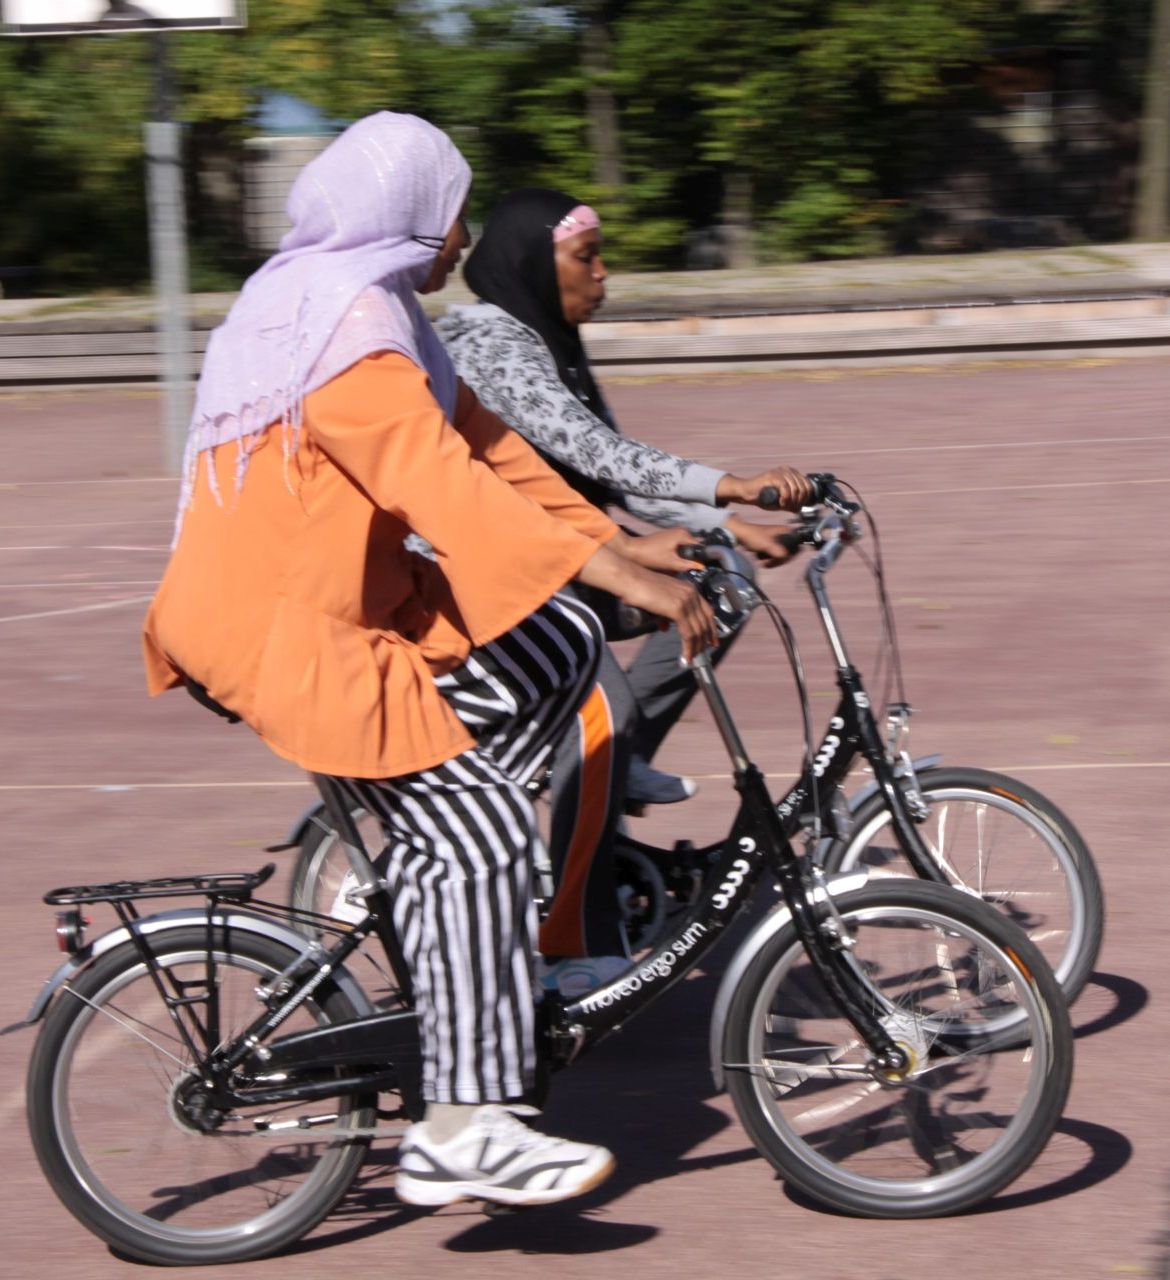 Zwei Frauen üben auf einem Sportplatz Fahrrad fahren.